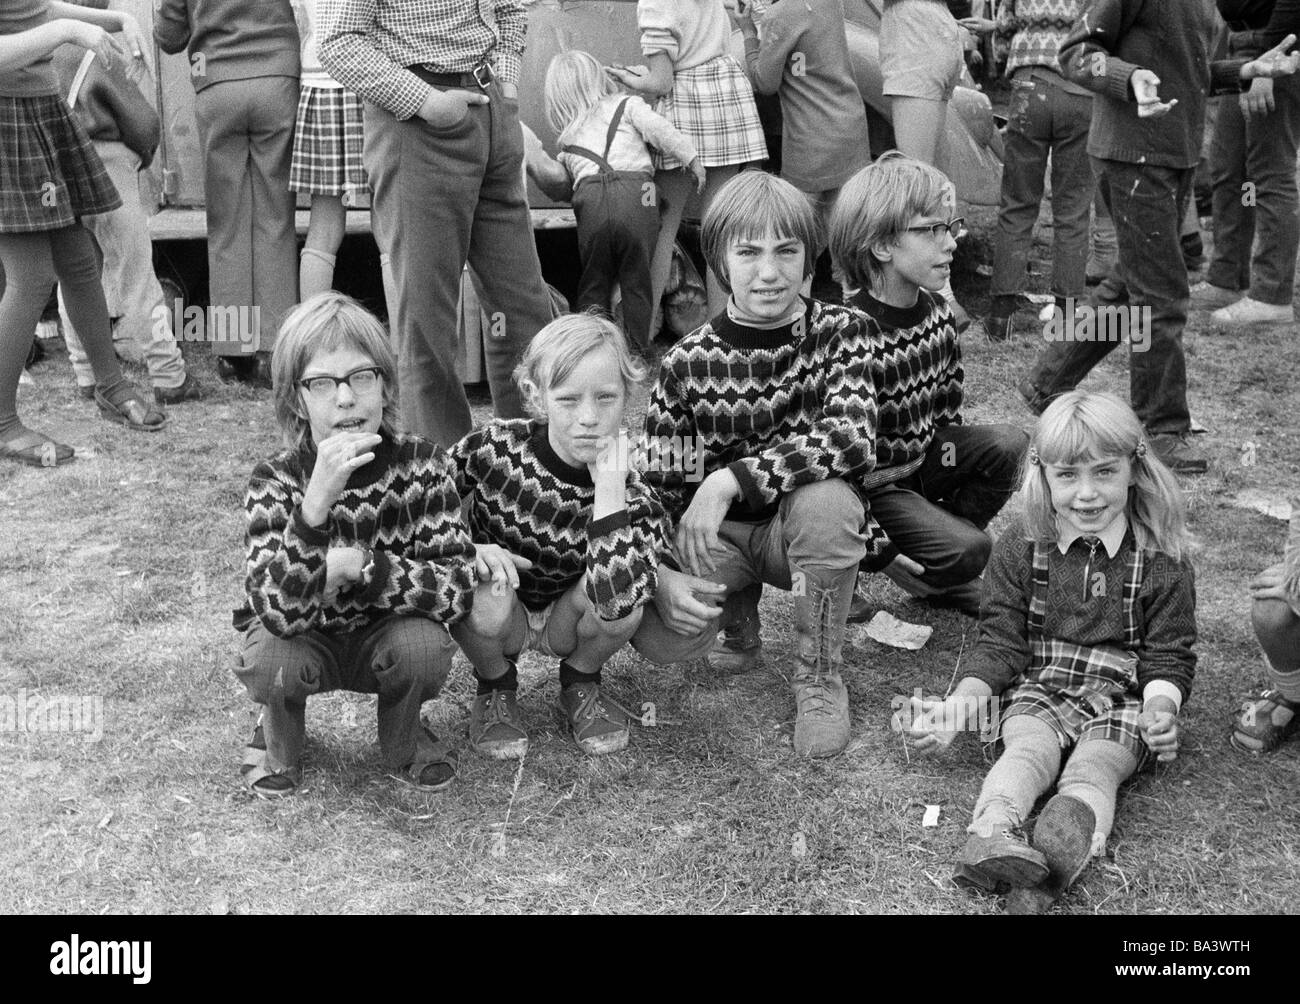 Negli anni settanta, foto in bianco e nero, persone, bambini, quattro ragazzi, bambina abiti identici, fratelli, bambini di strada di età compresa da 8 a 12 anni di età compresa tra i 4 ed i 5 anni Foto Stock